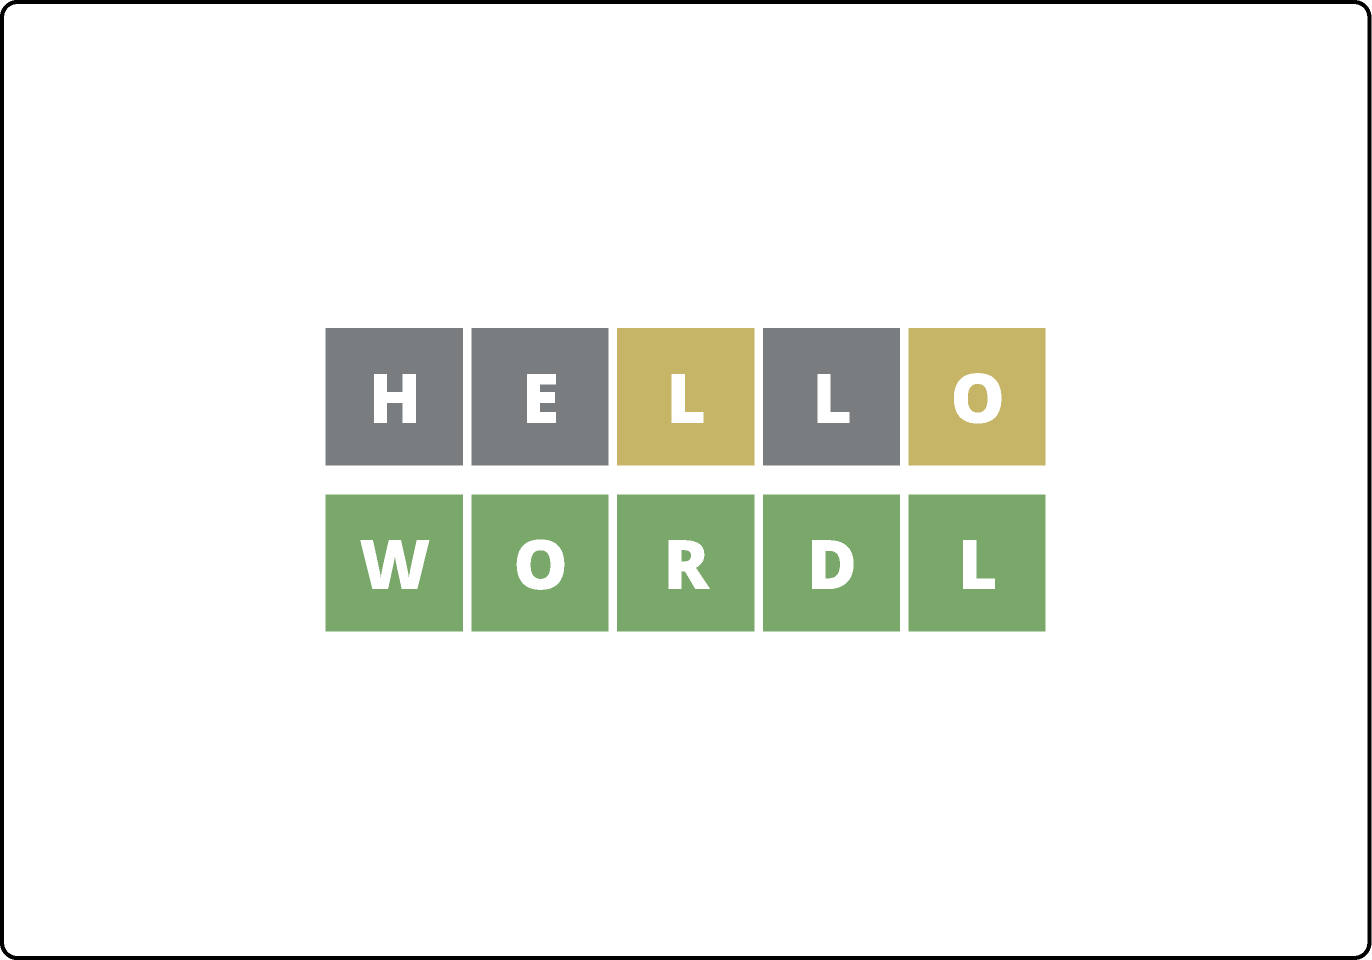 7. Hello Wordl